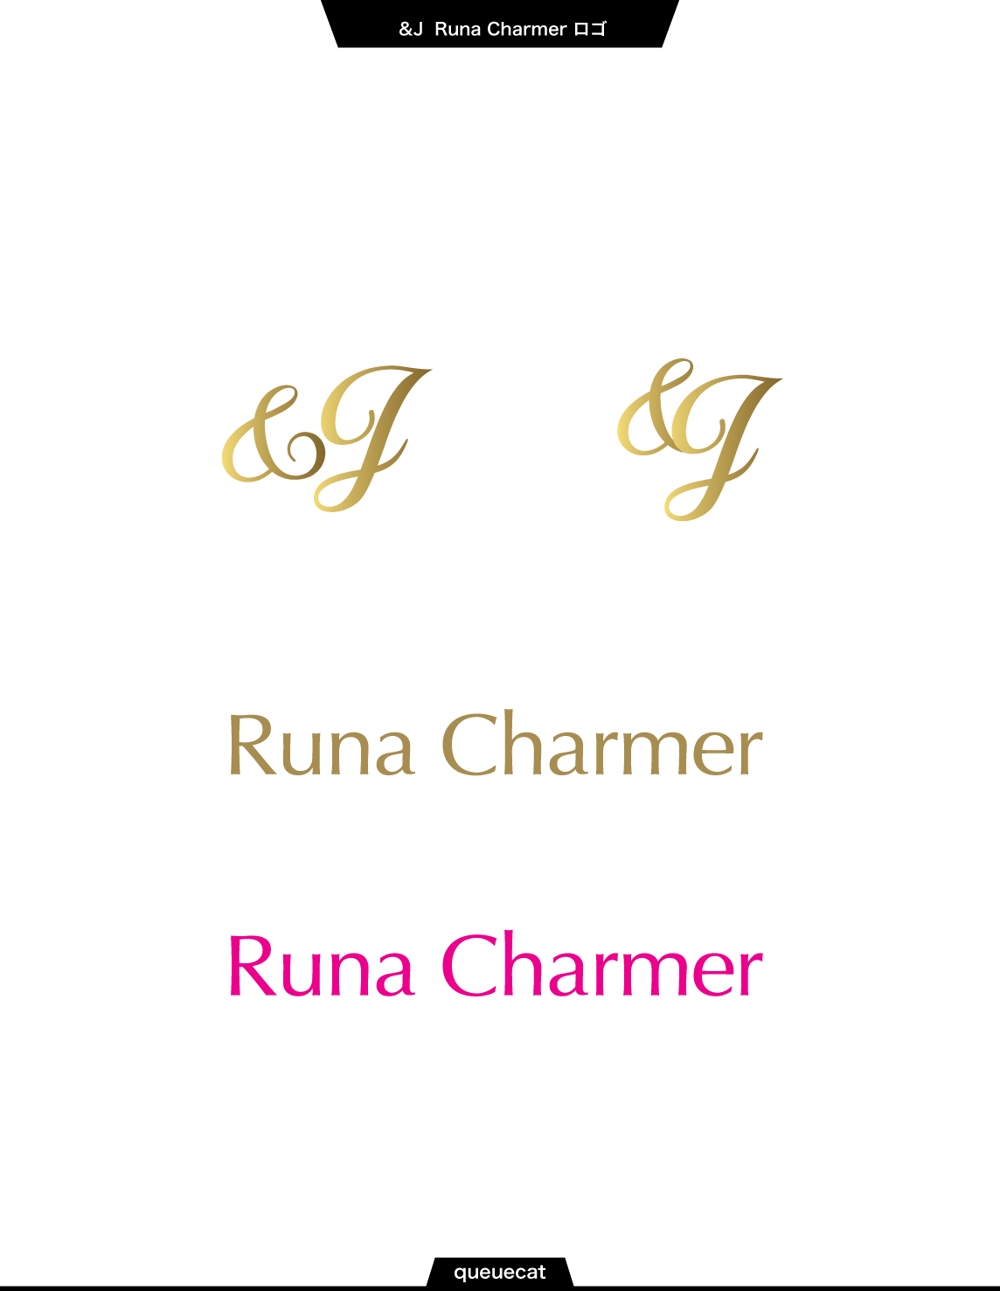 &J  Runa Charmer1_1.jpg